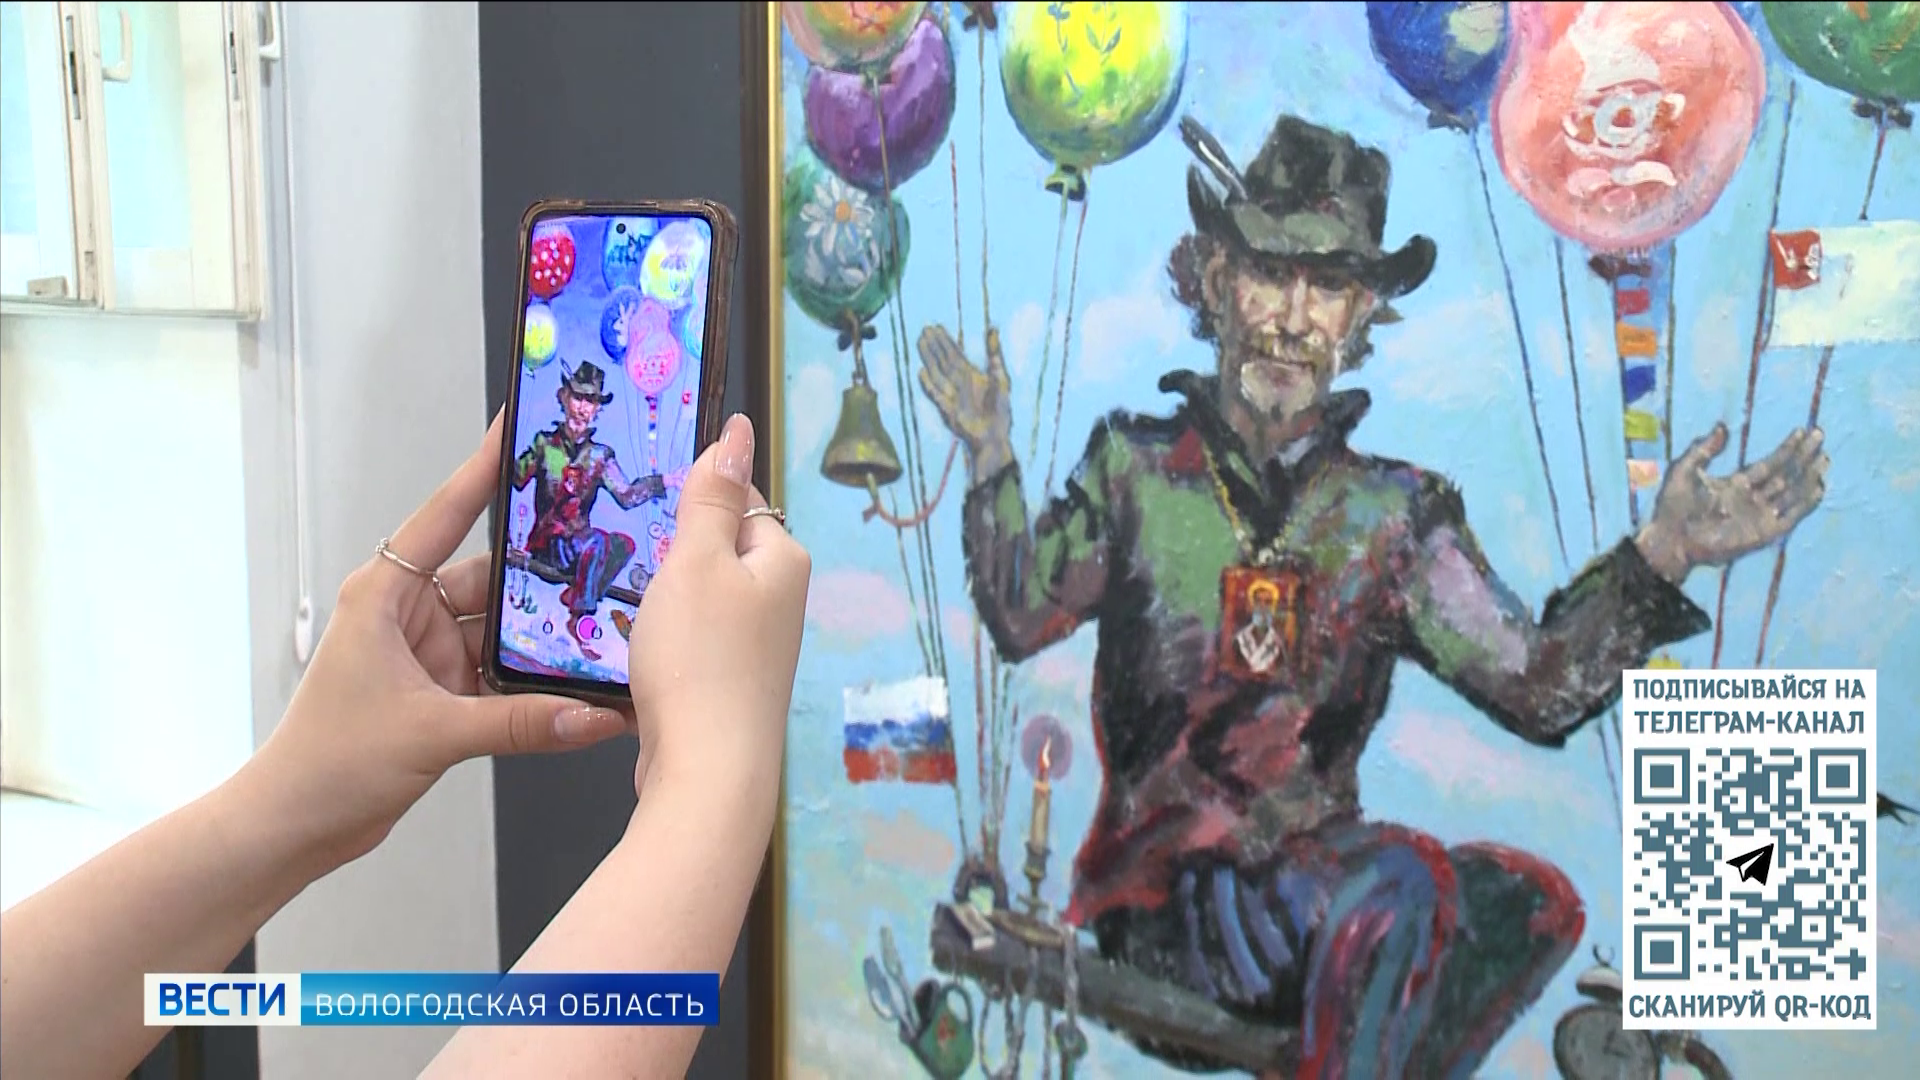 Уникальная выставка картин с дополненной реальностью открылась в Доме Корбакова в Вологде